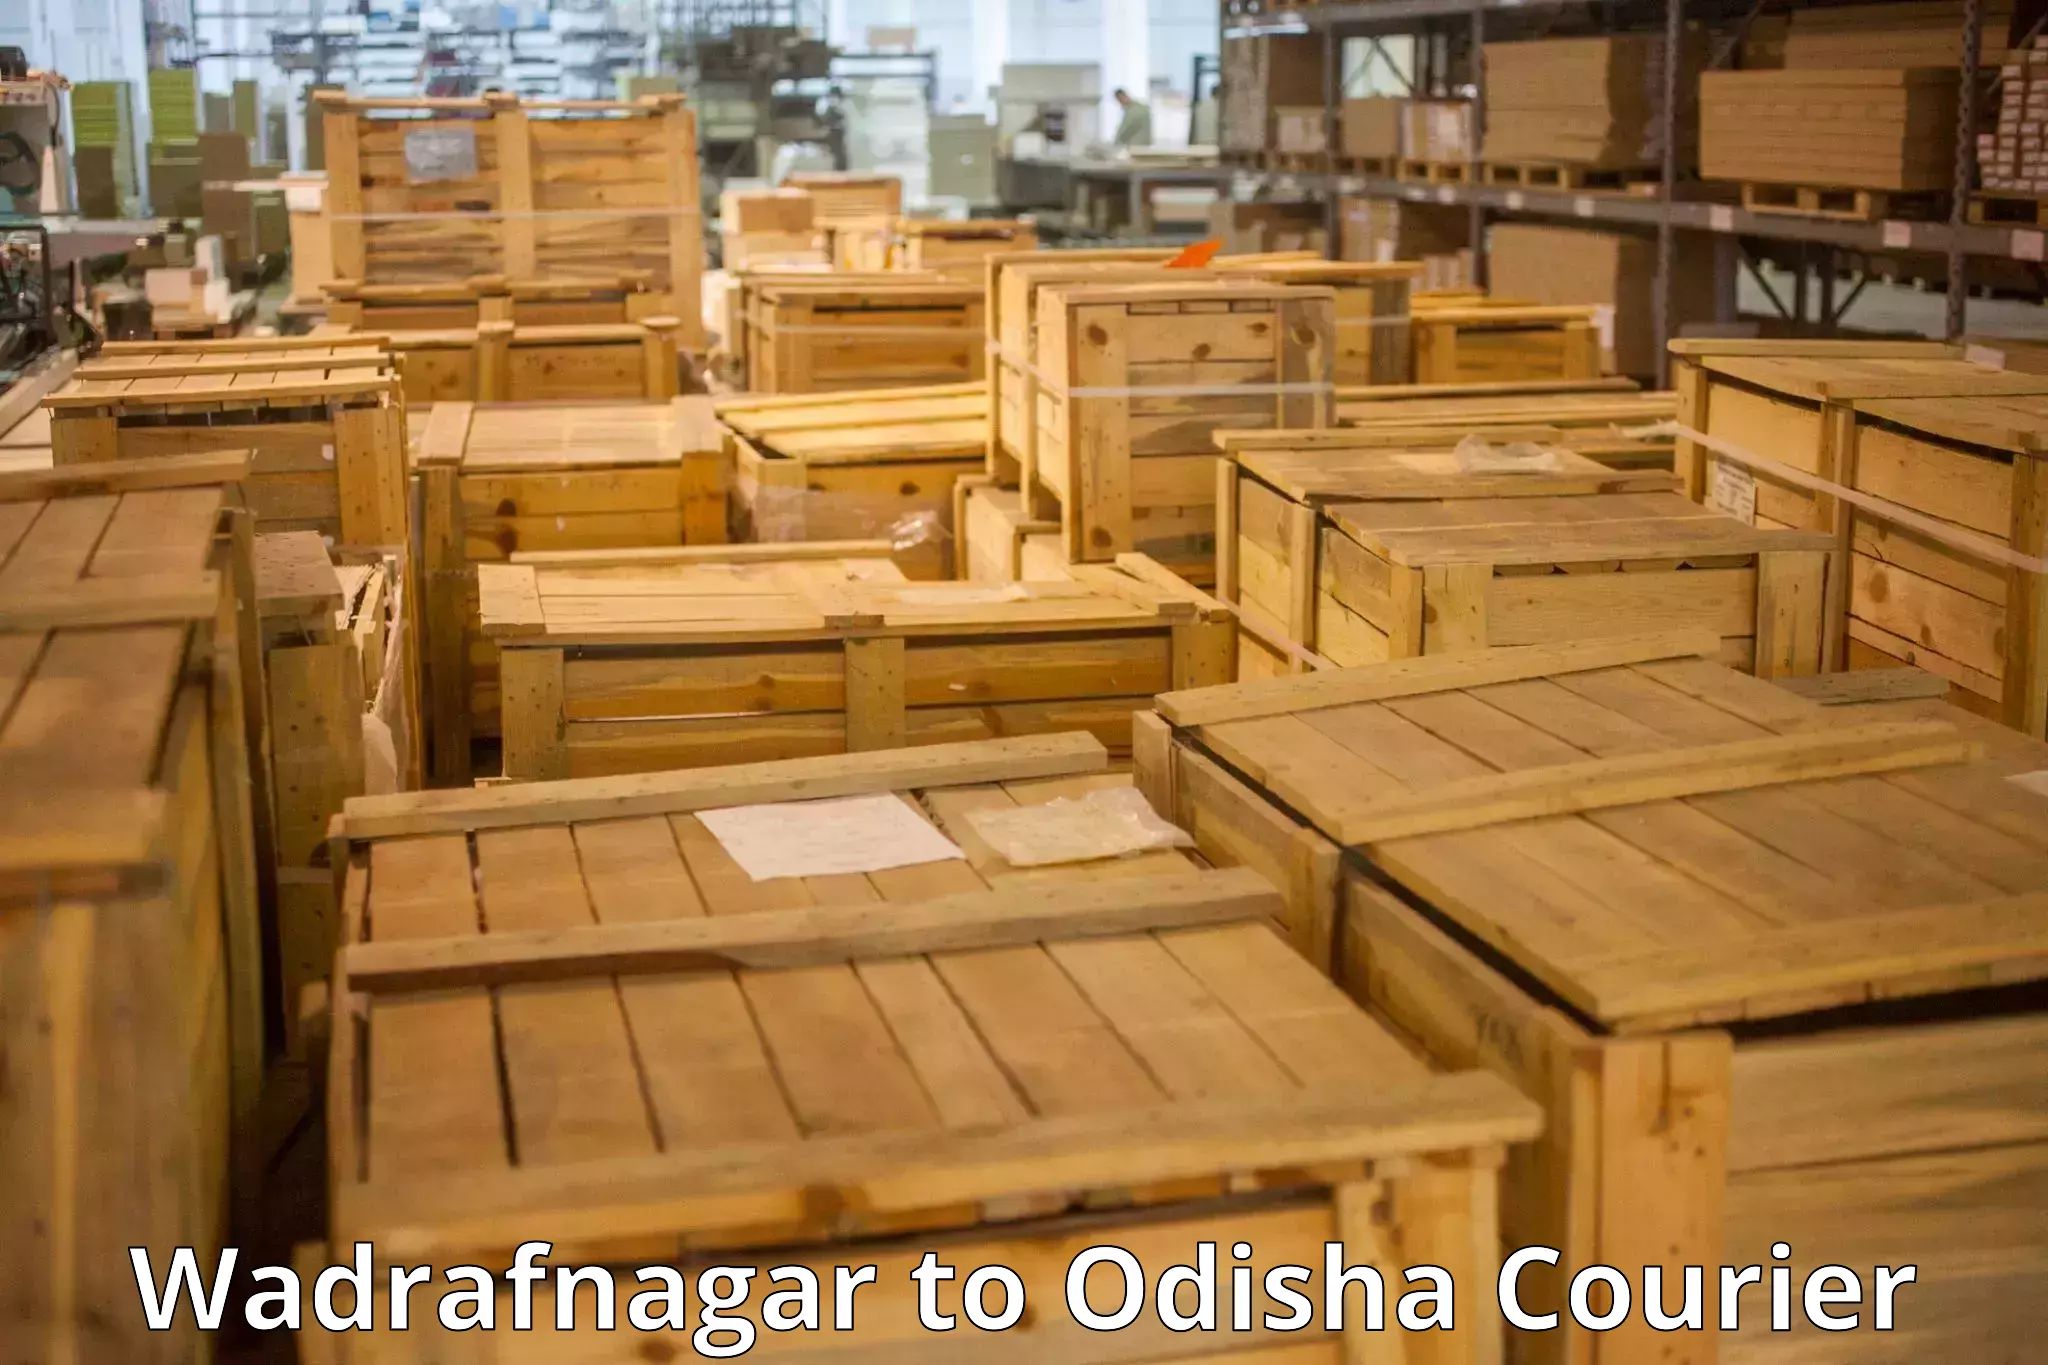 Urgent luggage shipment Wadrafnagar to Dhamara